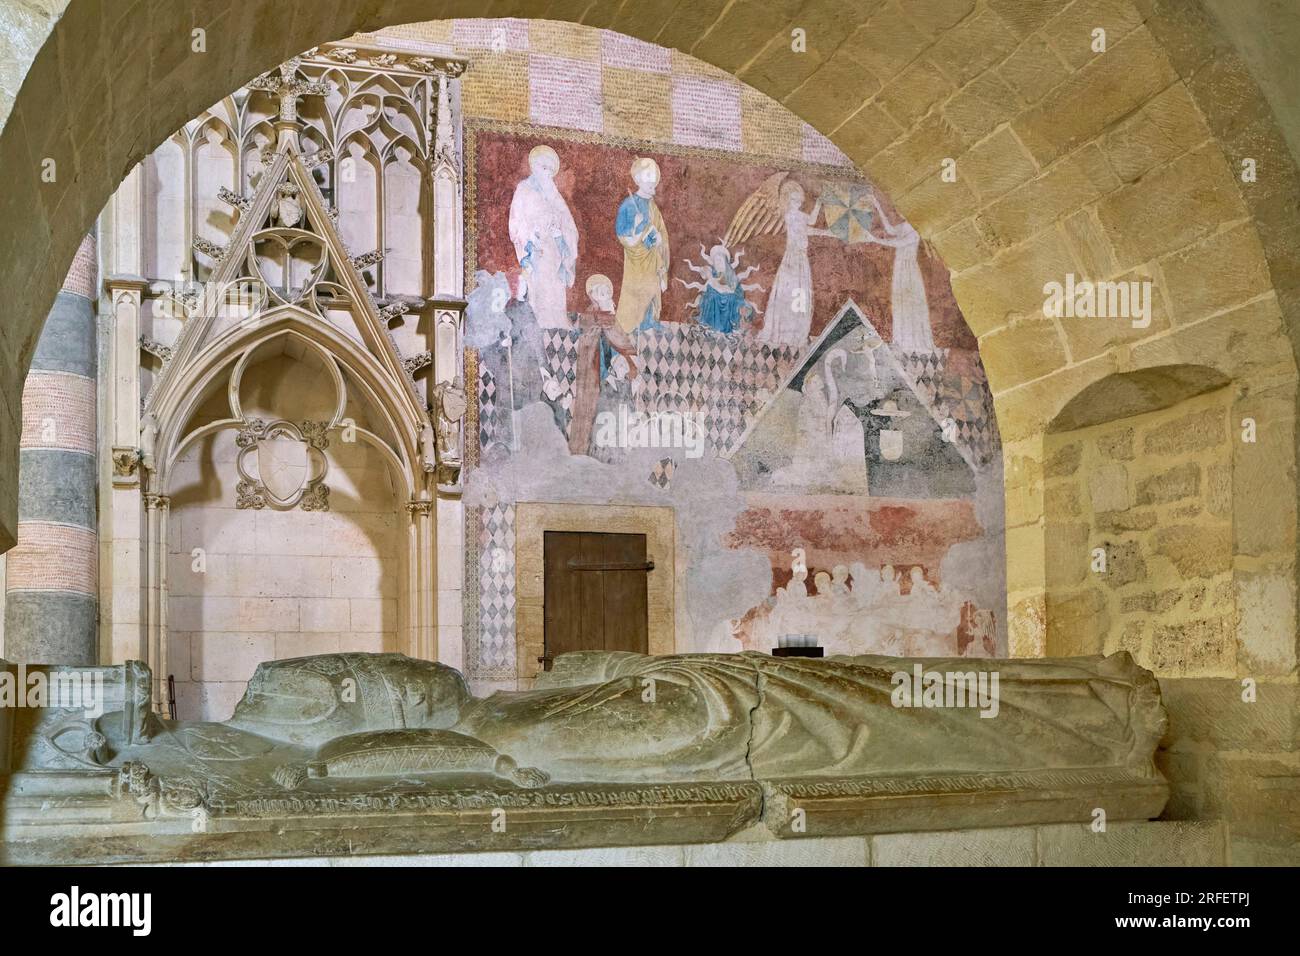 Svizzera, cantone di Vaud, invidia Romainmotier, ex chiesa abbaziale di Saint Pierre et Saint-Paul, ora tempio protestante, tomba del priore Henri de Severy e murales Foto Stock